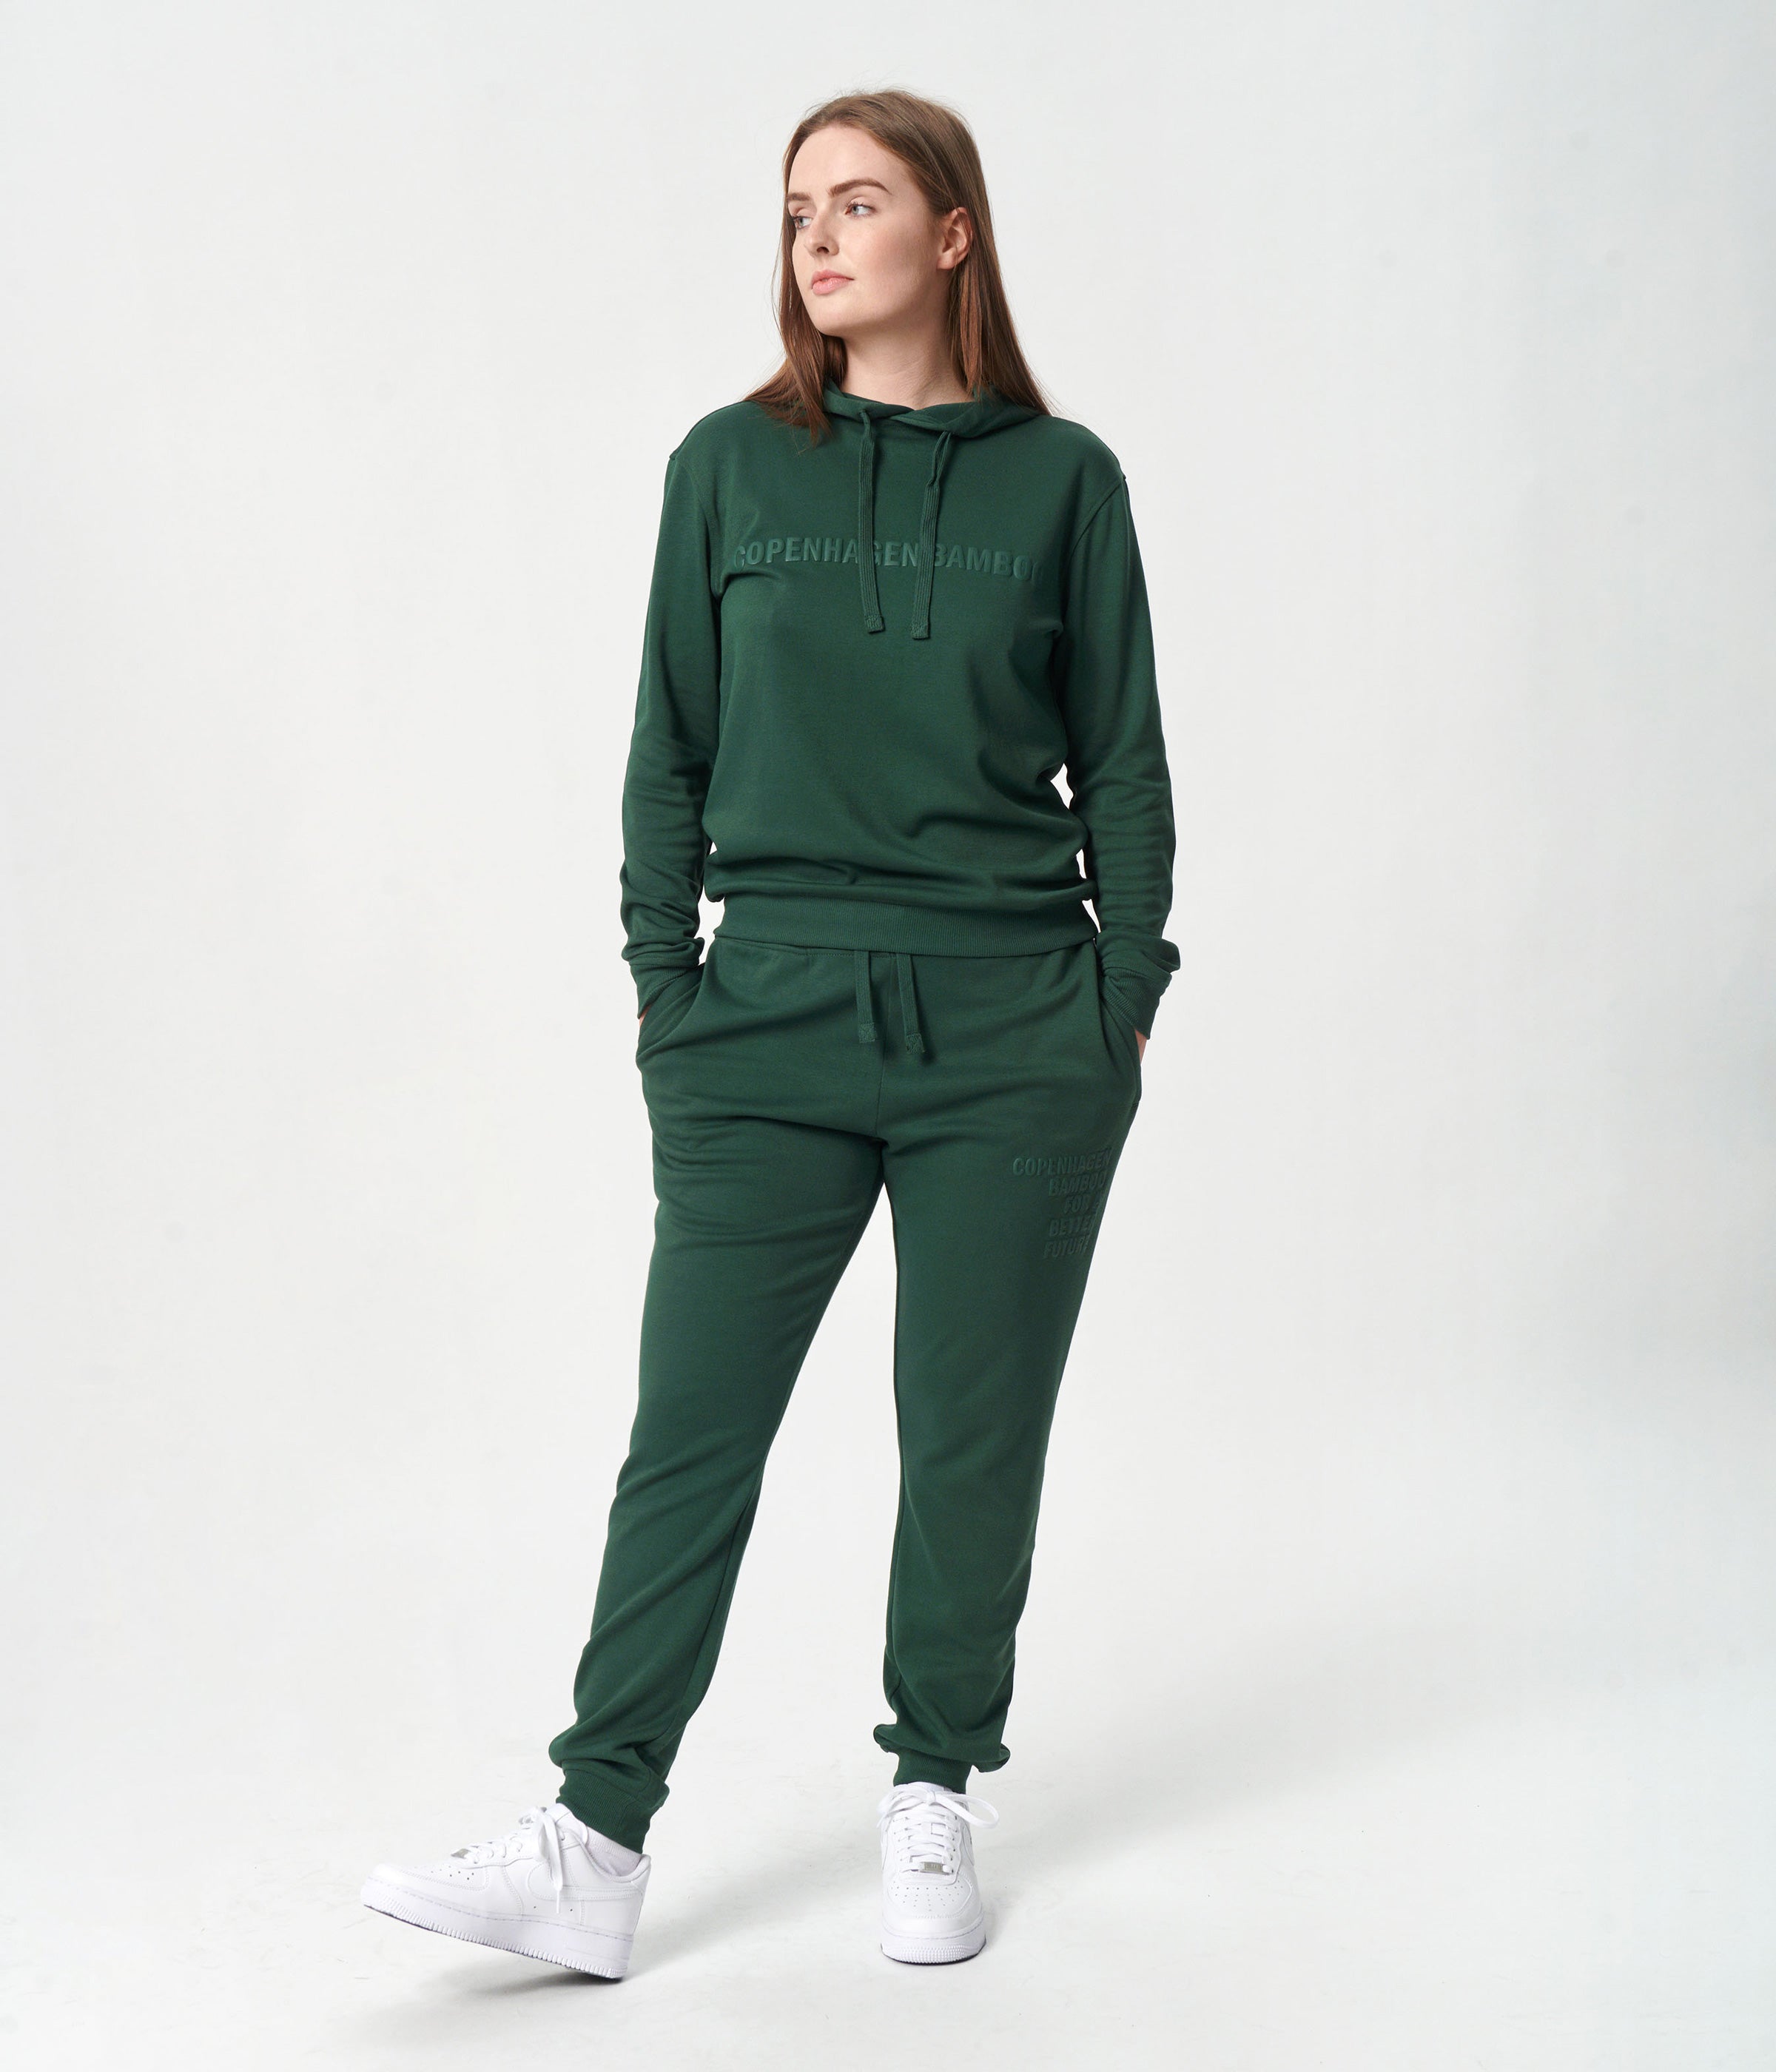 Bambus hoodie joggingsæt i grøn med logo til damer fra Copenhagen Bamboo, XS